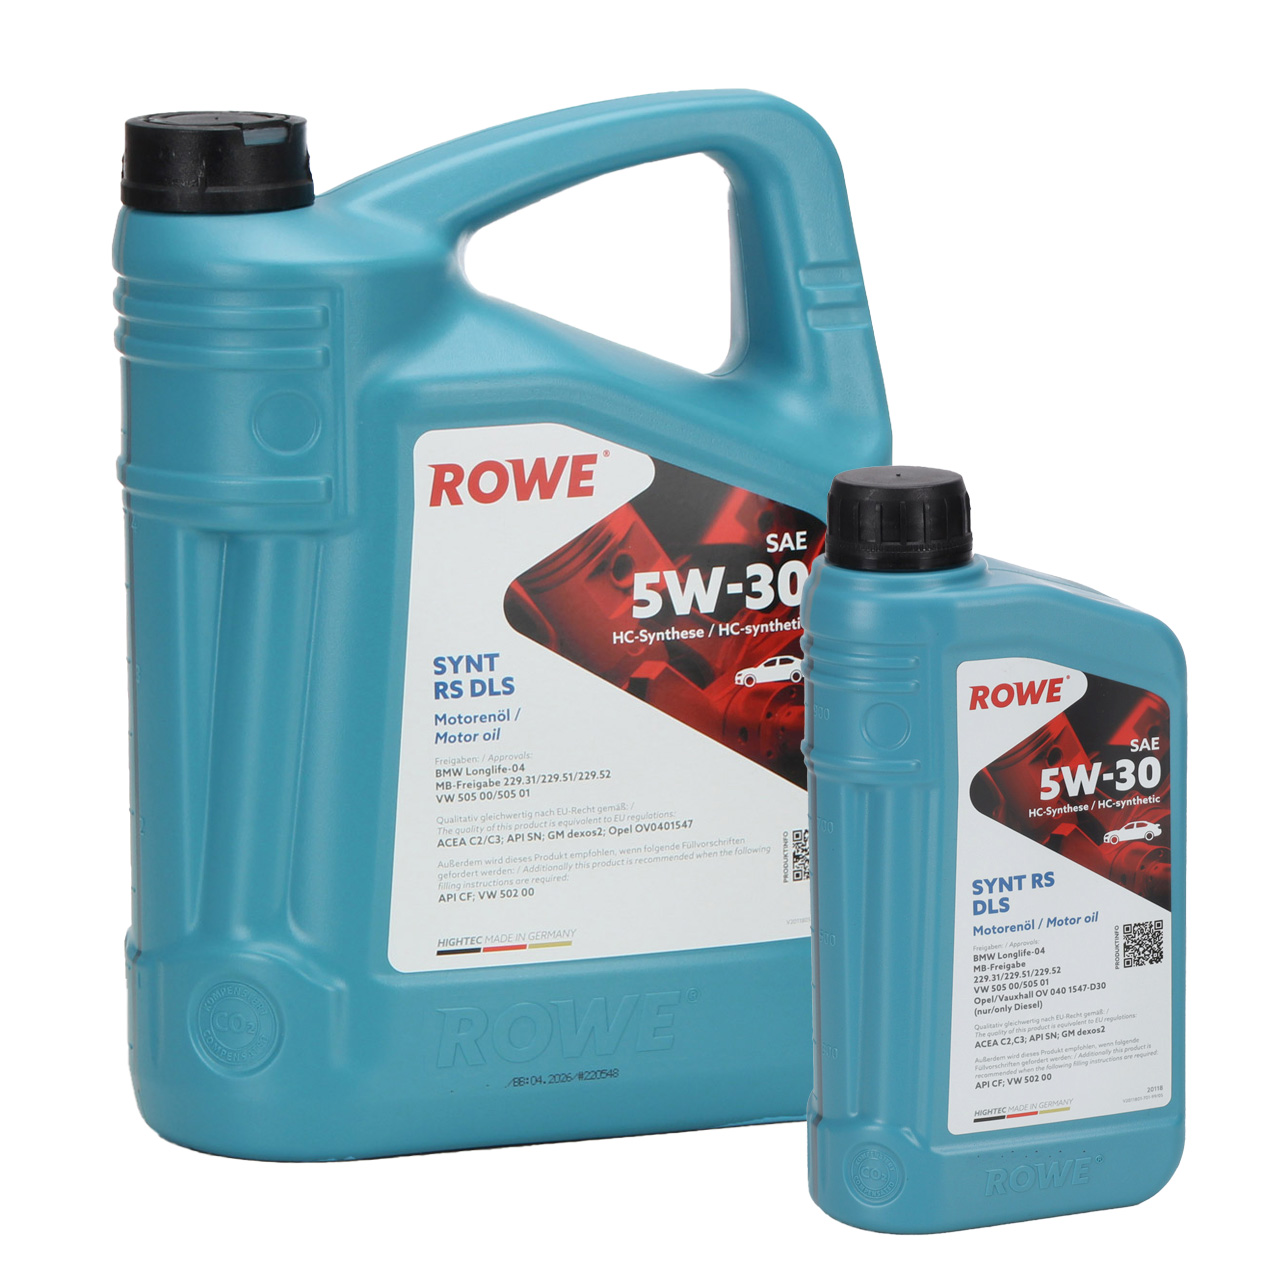 6L 6 Liter ROWE SYNT RS DLS 5W-30 Motoröl Öl BMW LL-04 MB 229.31/51/52 VW 505.00/505.01